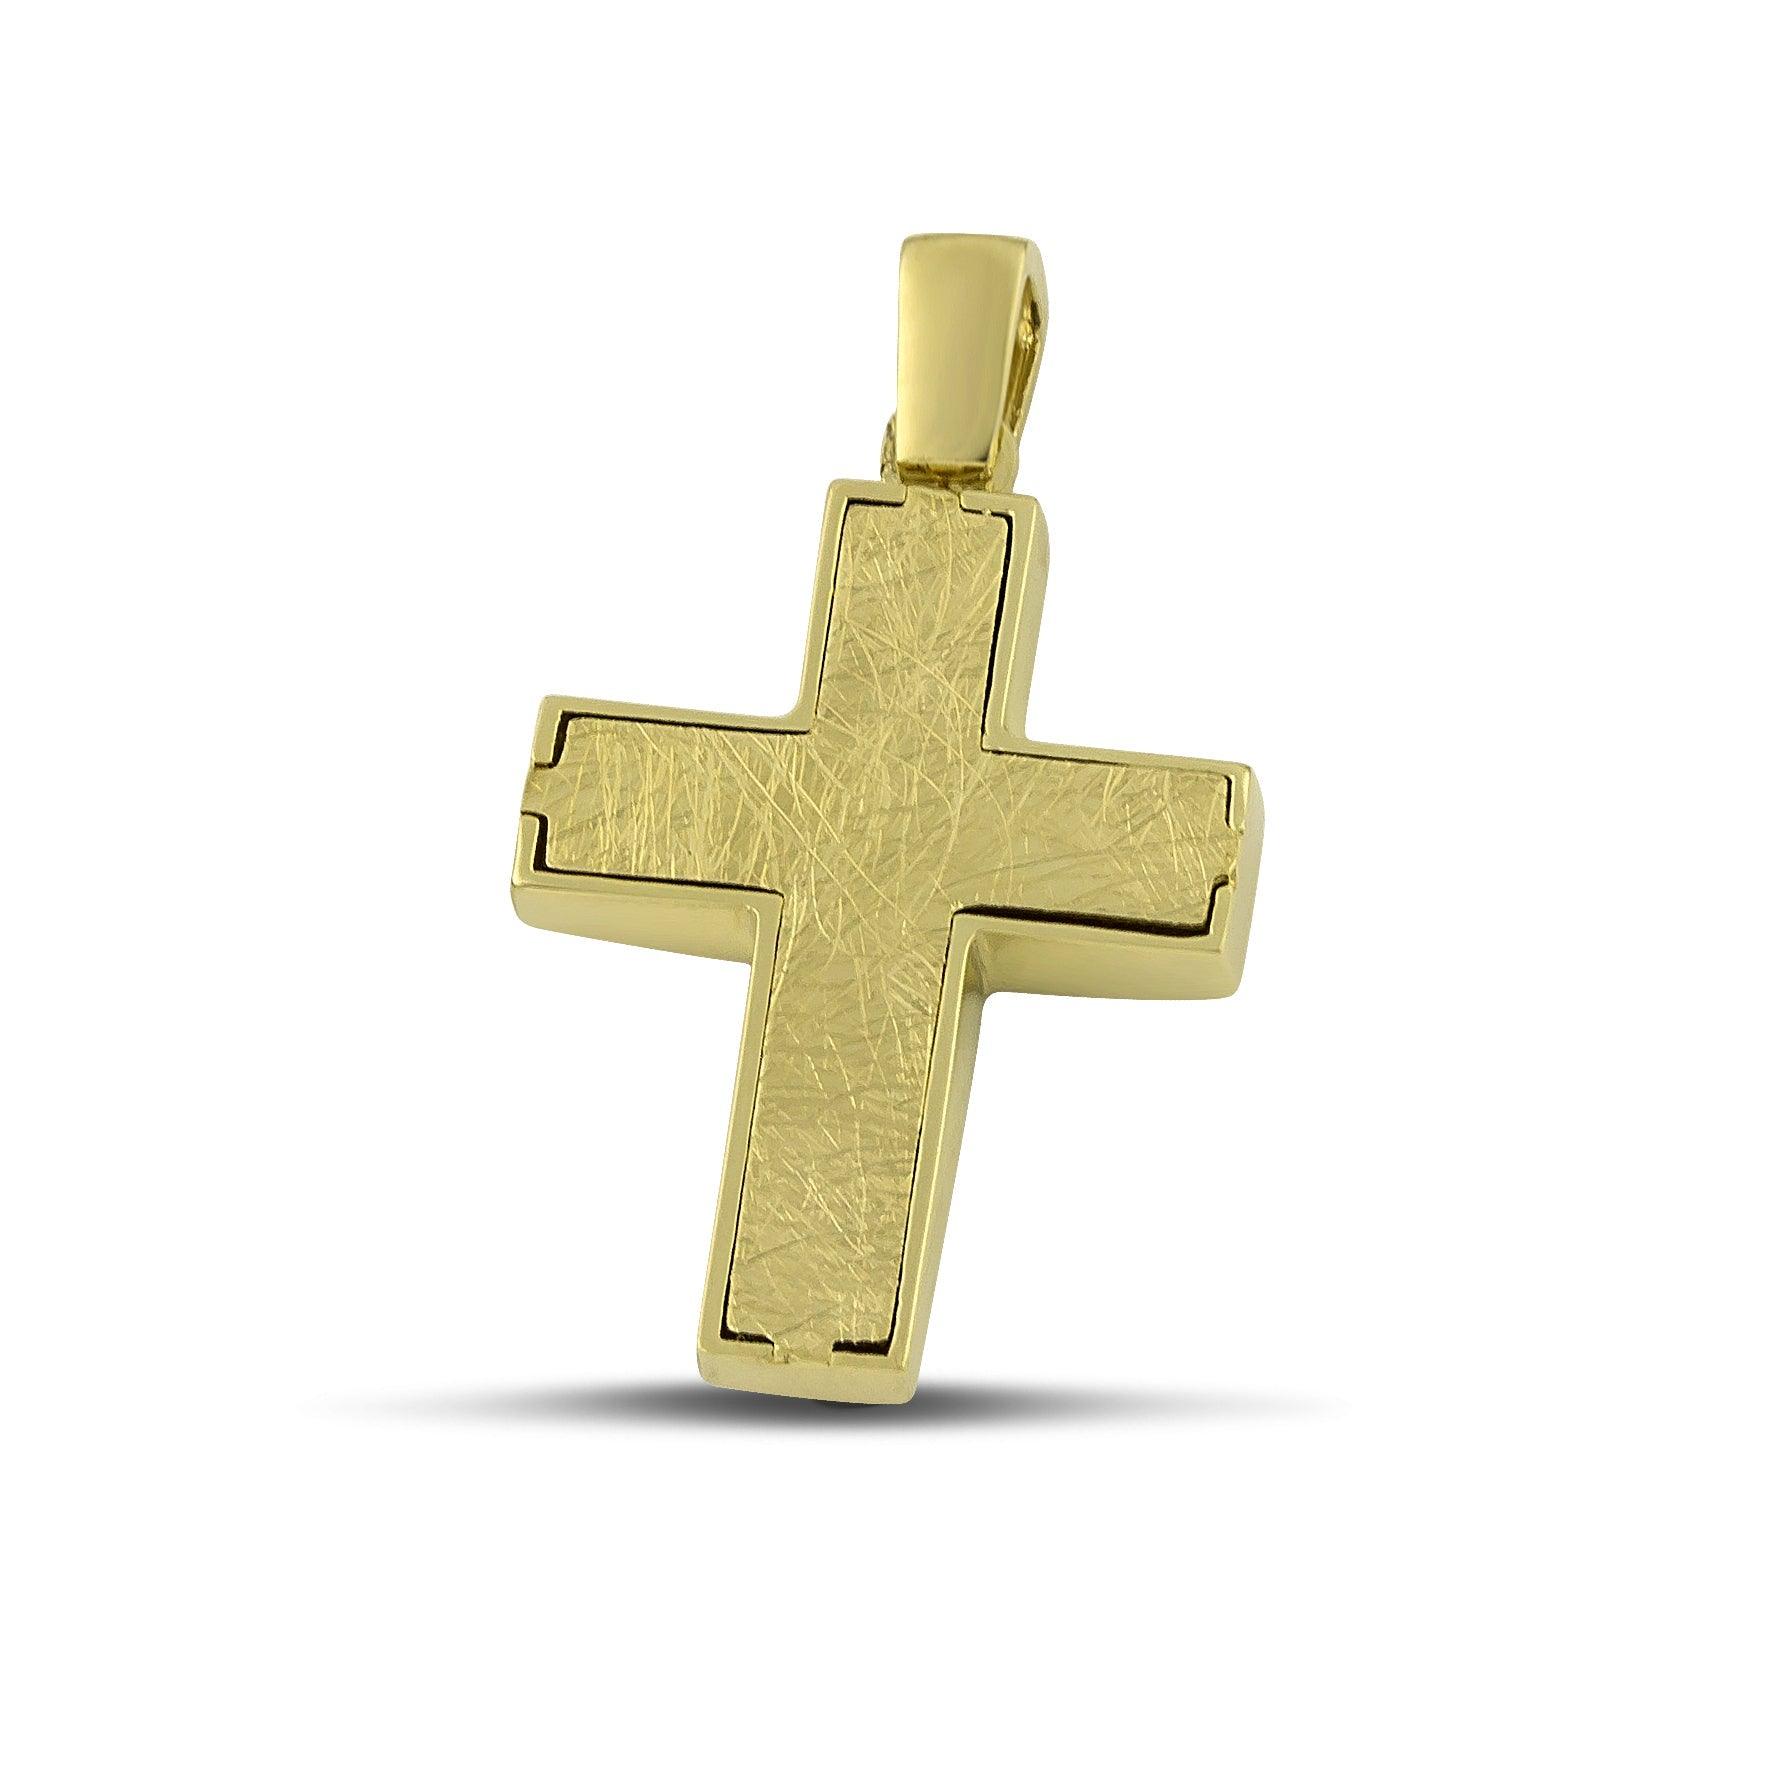 Αντρικός σταυρός διπλής όψης, από χρυσό Κ14 σαγρέ.